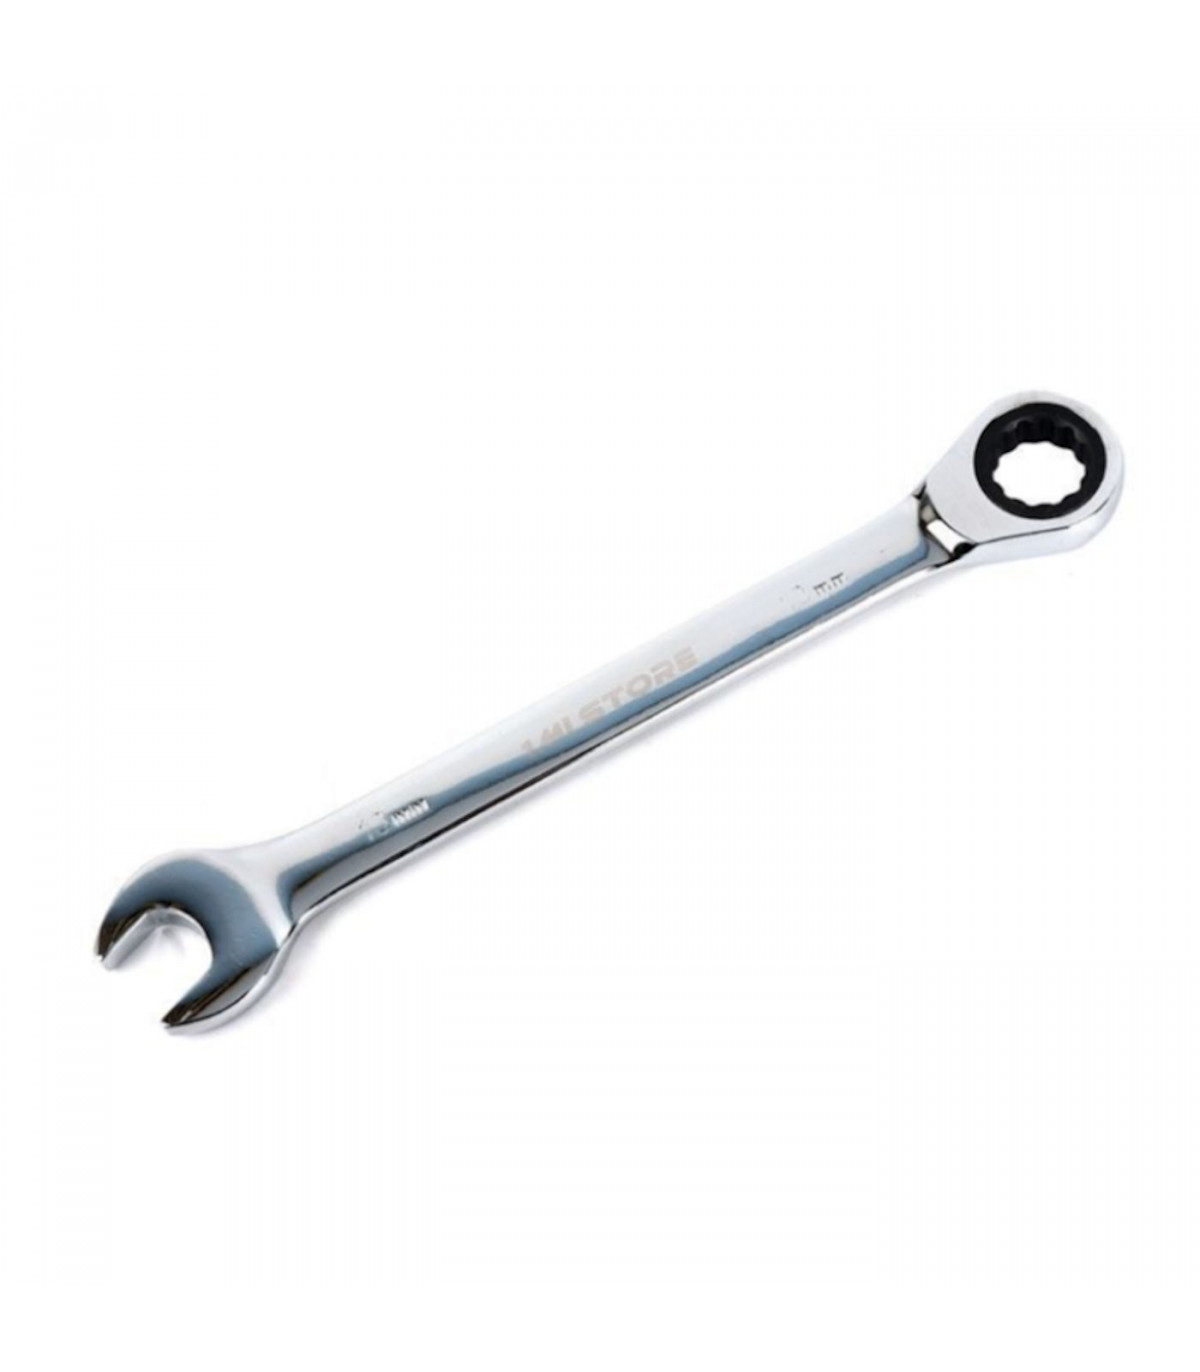 Llave de carraca + llave inglesa de 0,13 cm, para funciones de mecánica o  bricolaje, con medidas de 18 x 1, x 0,2 cm. Herramient